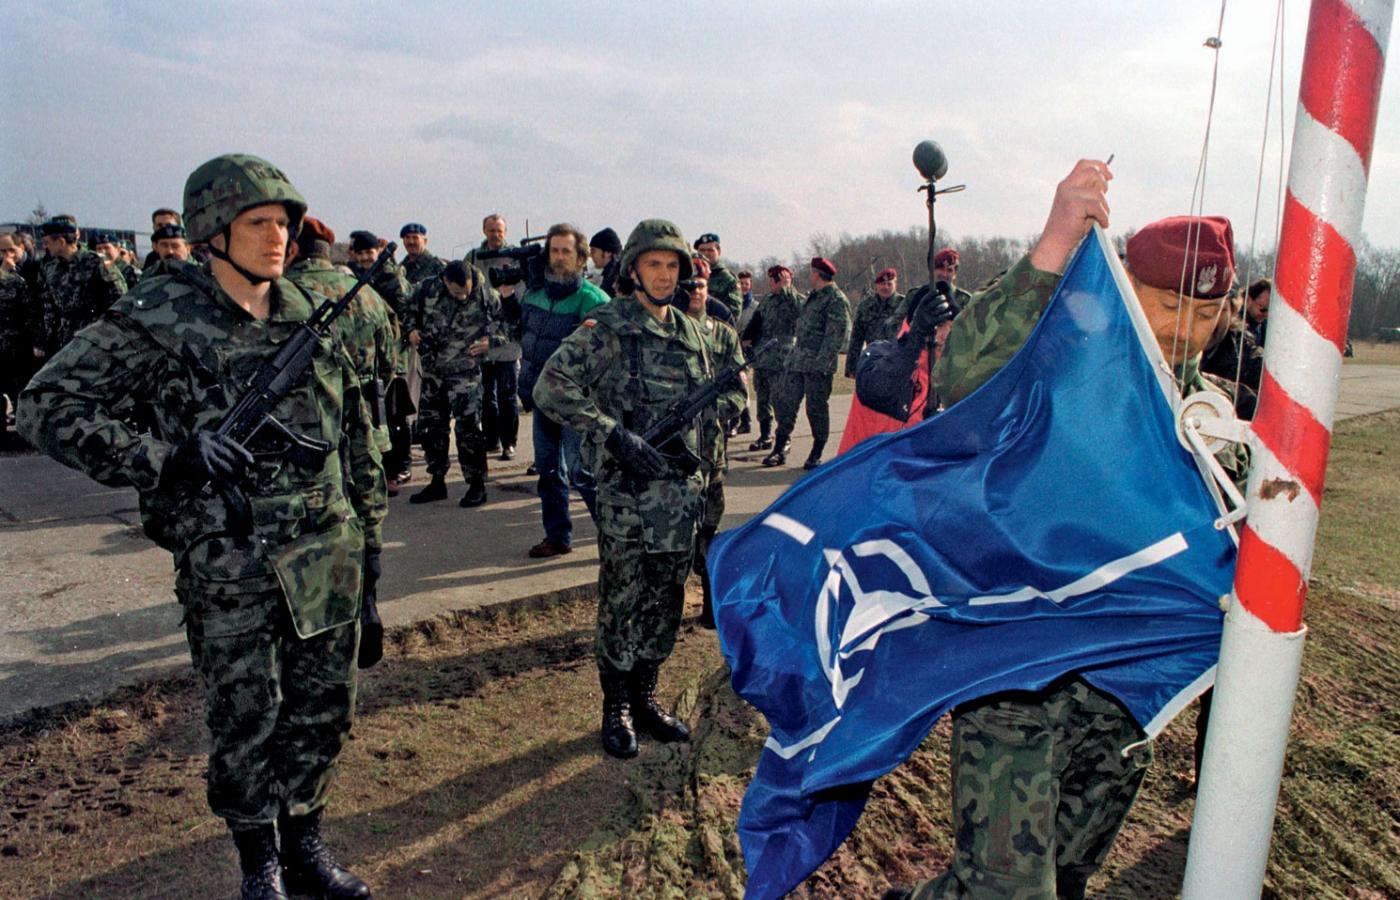 Wciąganie flagi NATO na maszt w 6. Brygadzie Powietrznodesantowej, Kraków, 1999 r.